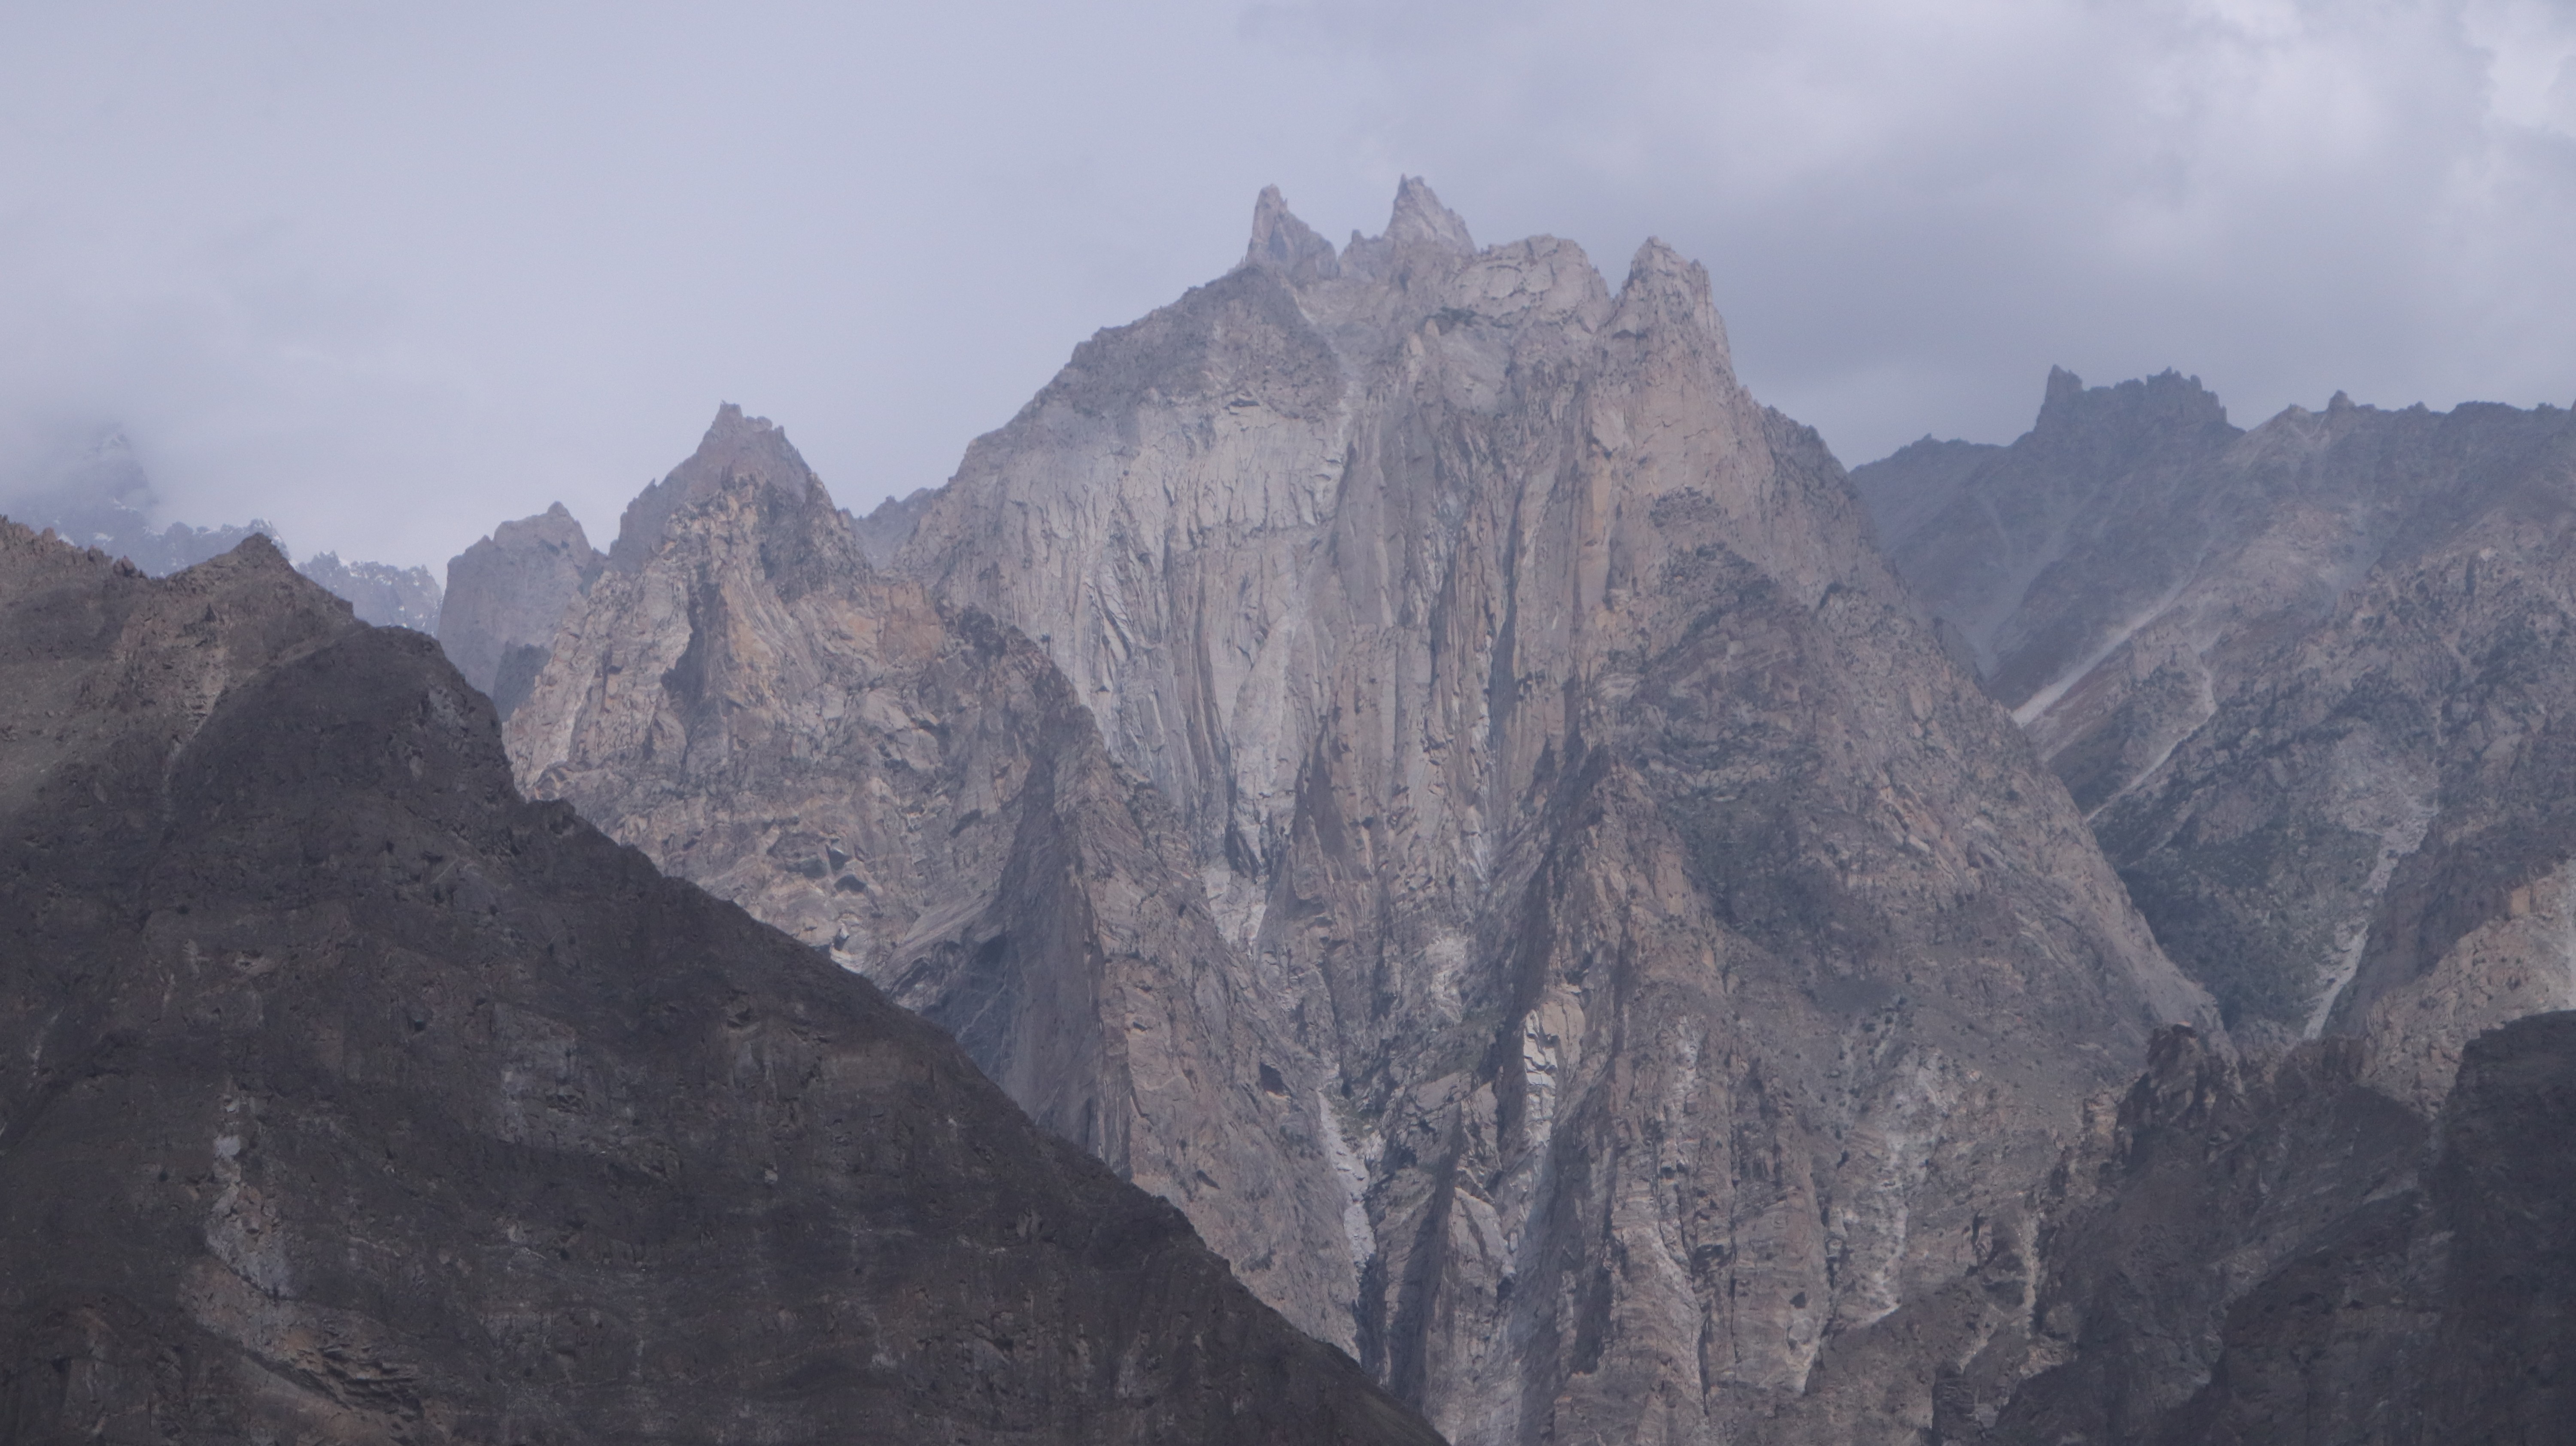 The potrait view of the majestic peak: The Passu Sar Peak